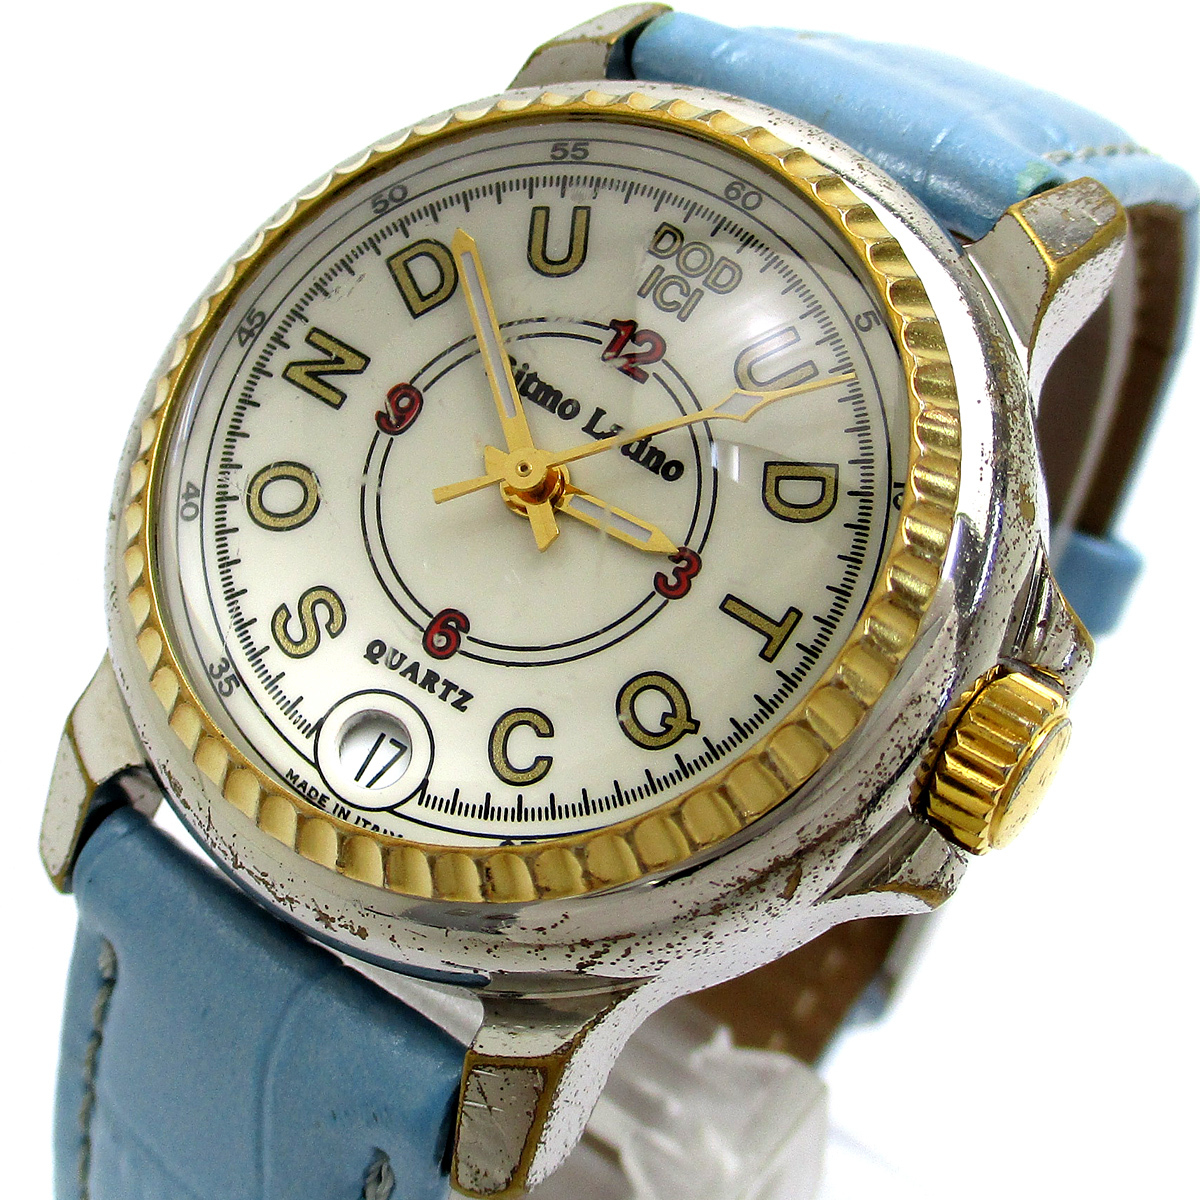  Ritmo Latino часы do-tichi унисекс белый циферблат наручные часы кварц Ritmo LatinodotichiDODICI мужской женский 